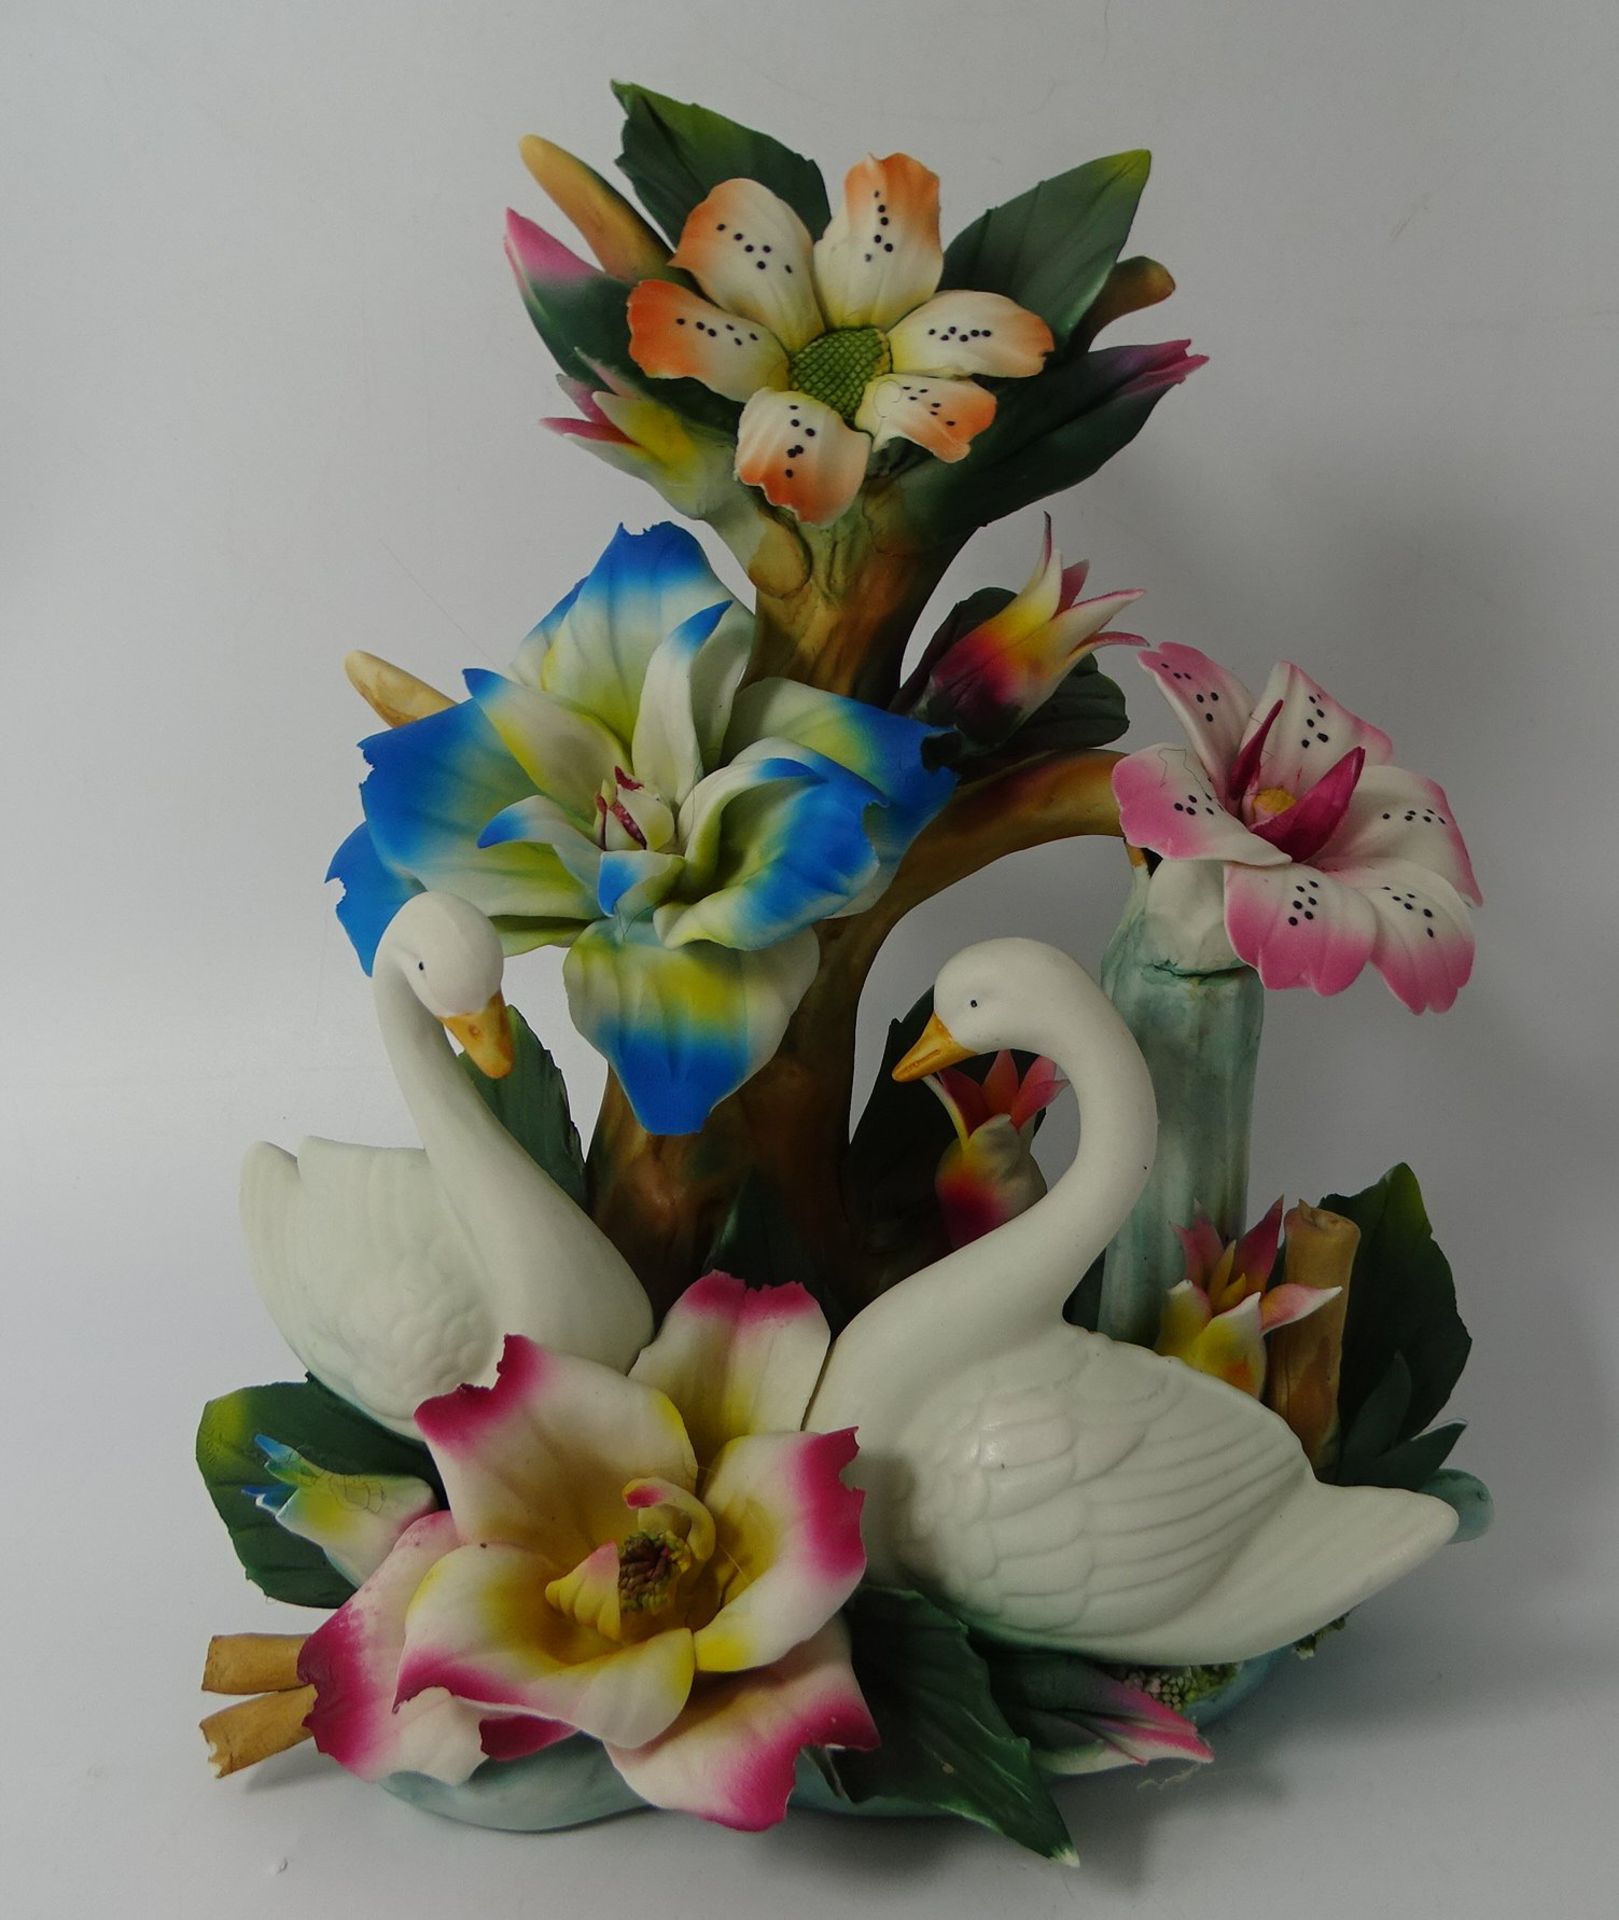 Tischdekoration "Capo di Monte",einige Blüten/Blätter bestossen, H-24 cm, B-19 cm